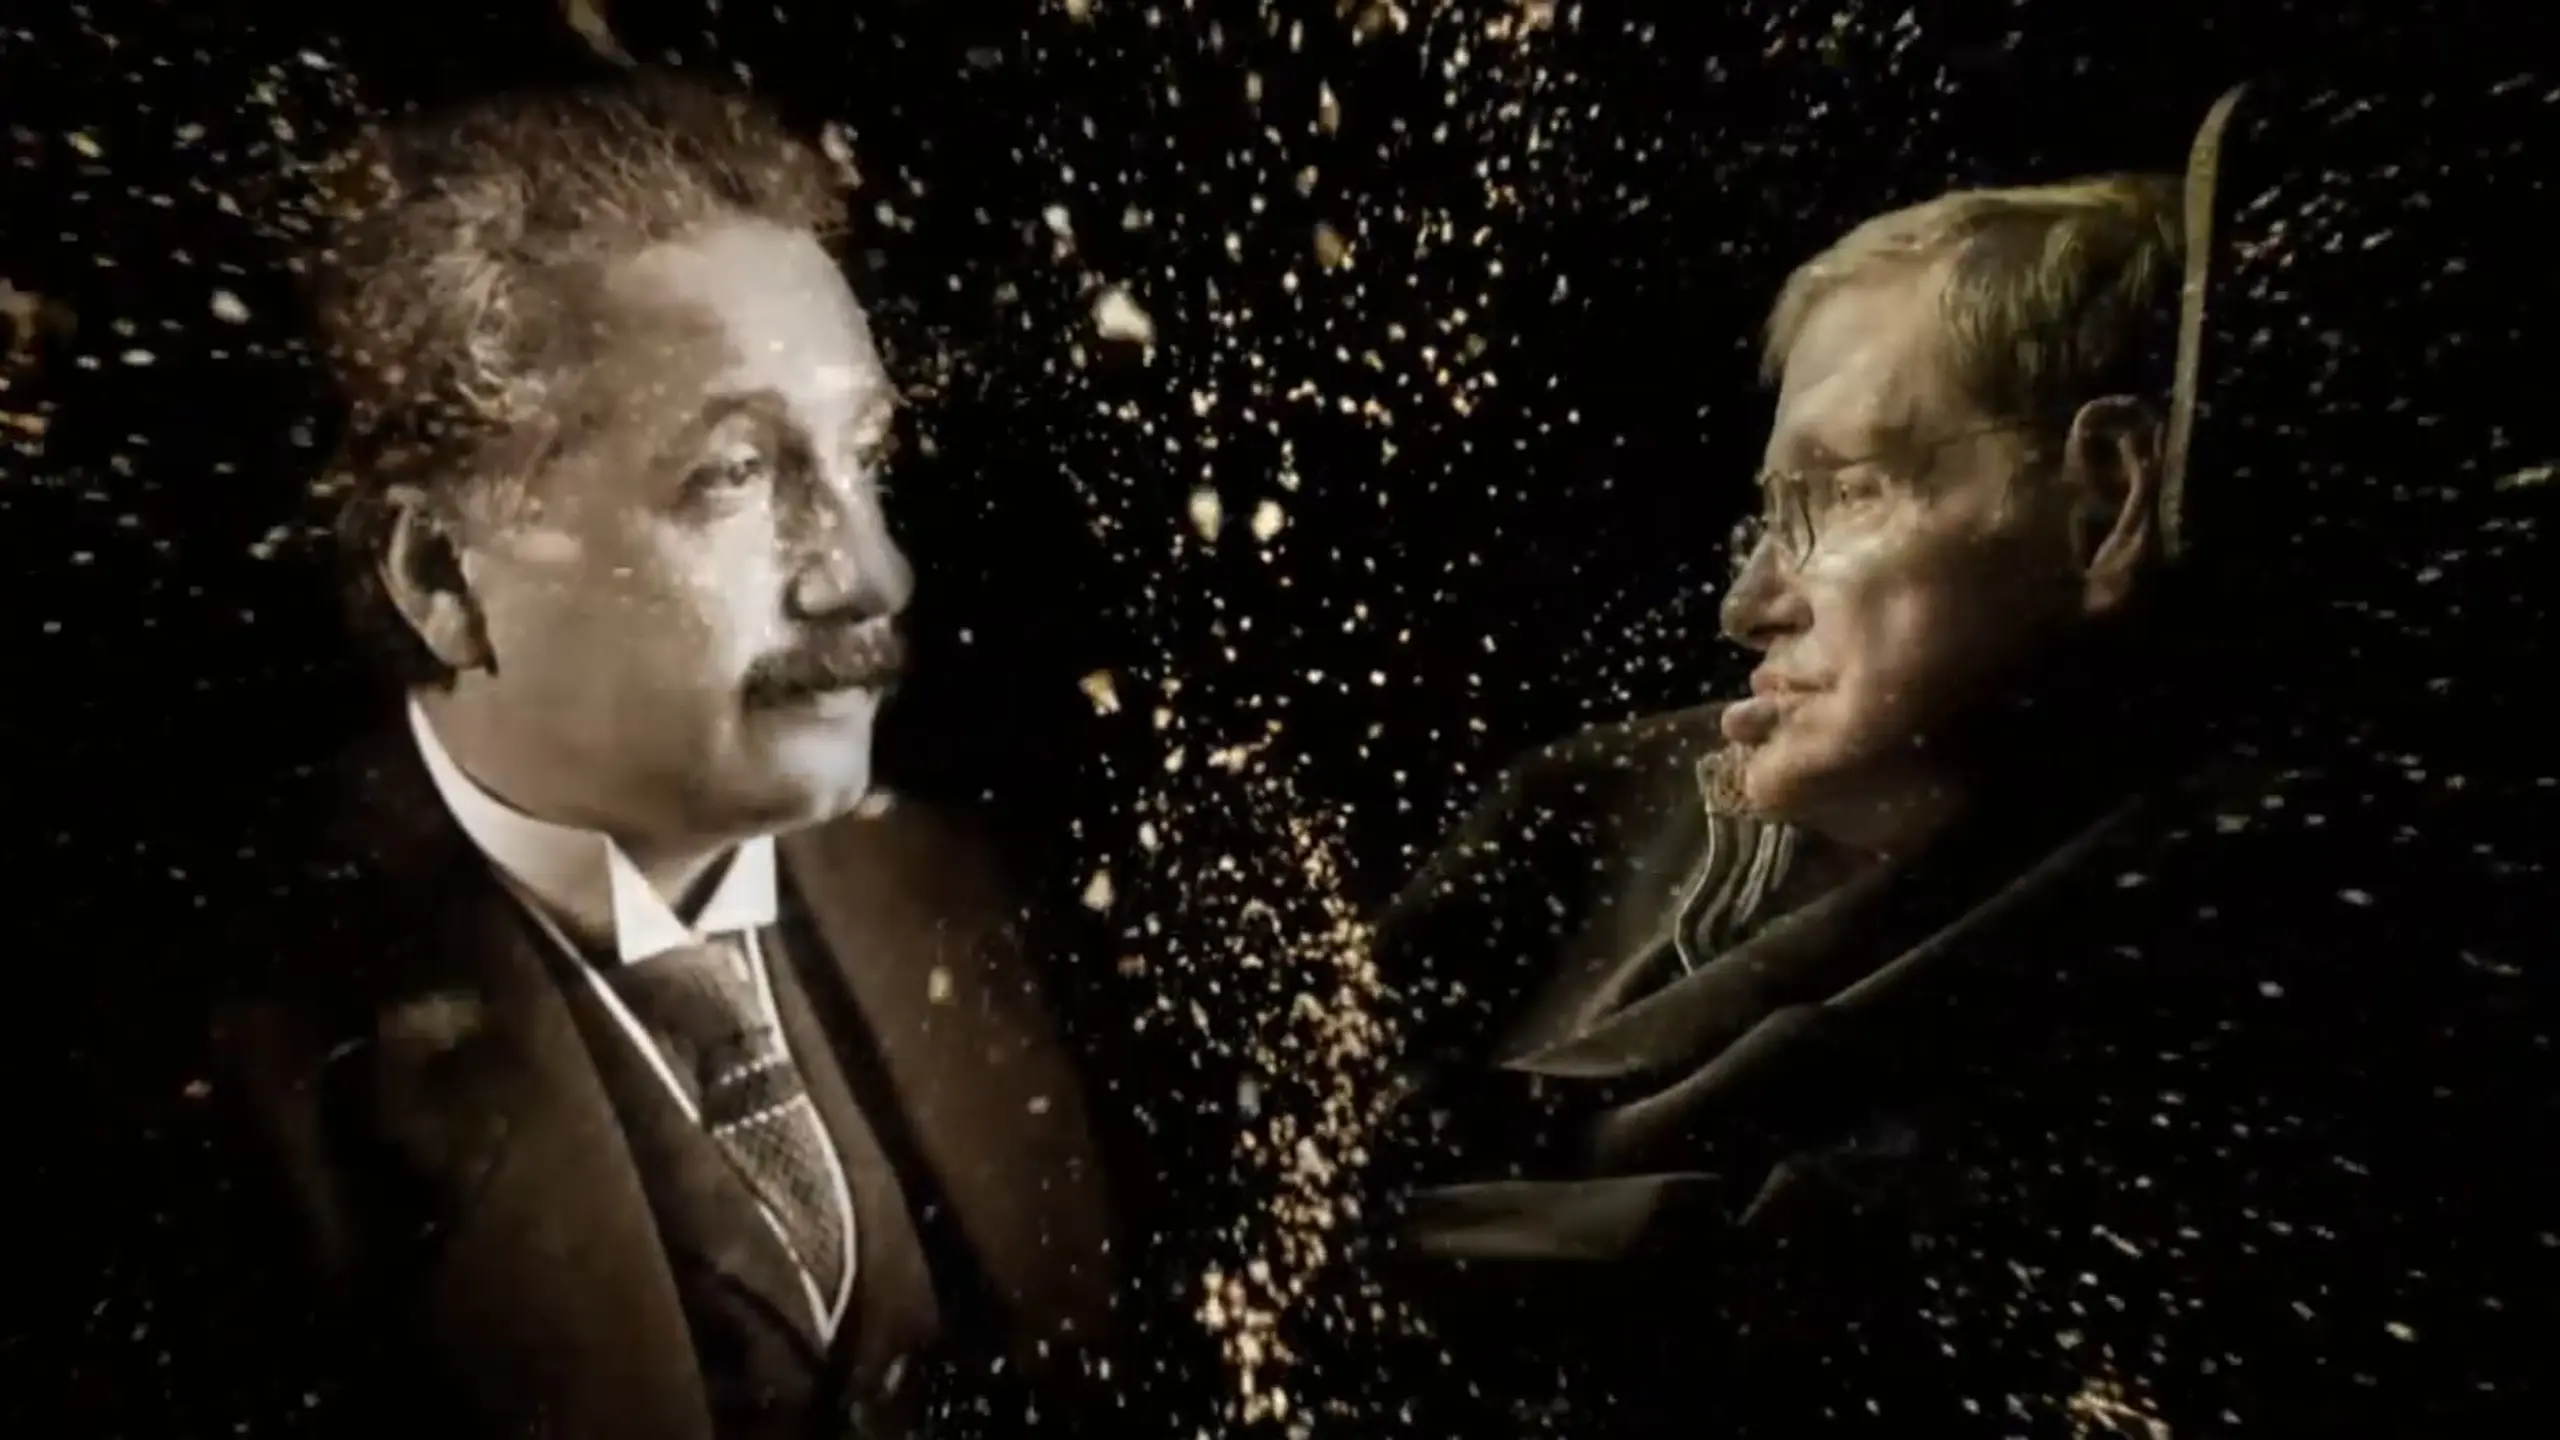 Einstein und Hawking - Das Geheimnis von Zeit und Raum